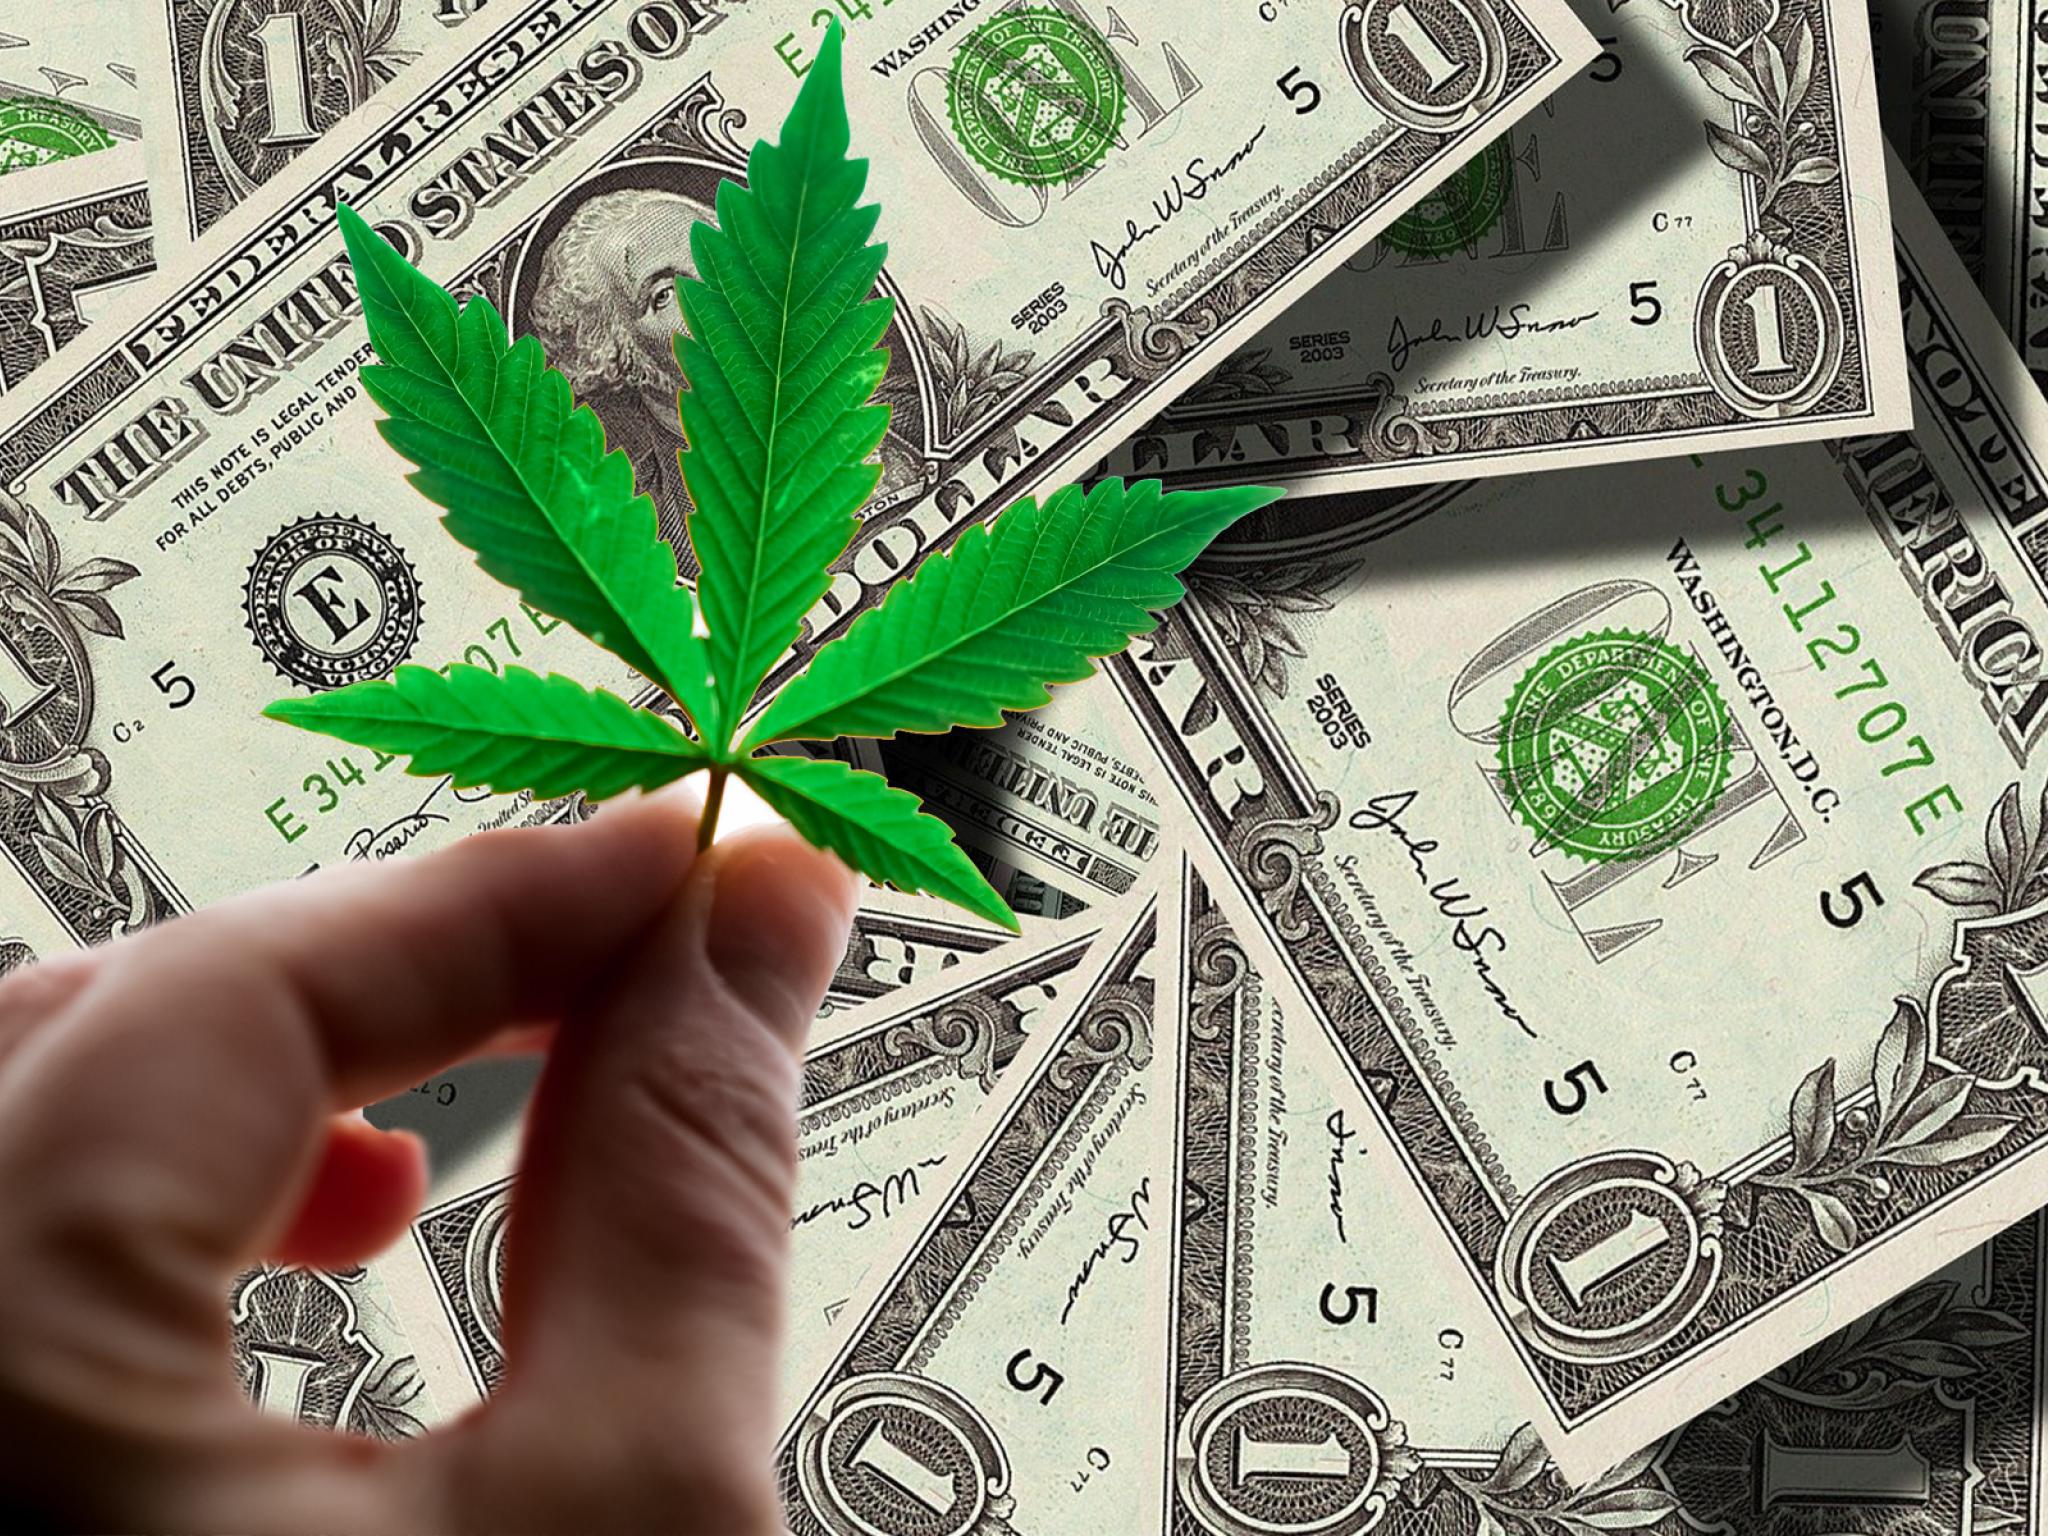  cannabis-retail-giant-announces-c30m-atm-offering-replacing-previous-atm-program 